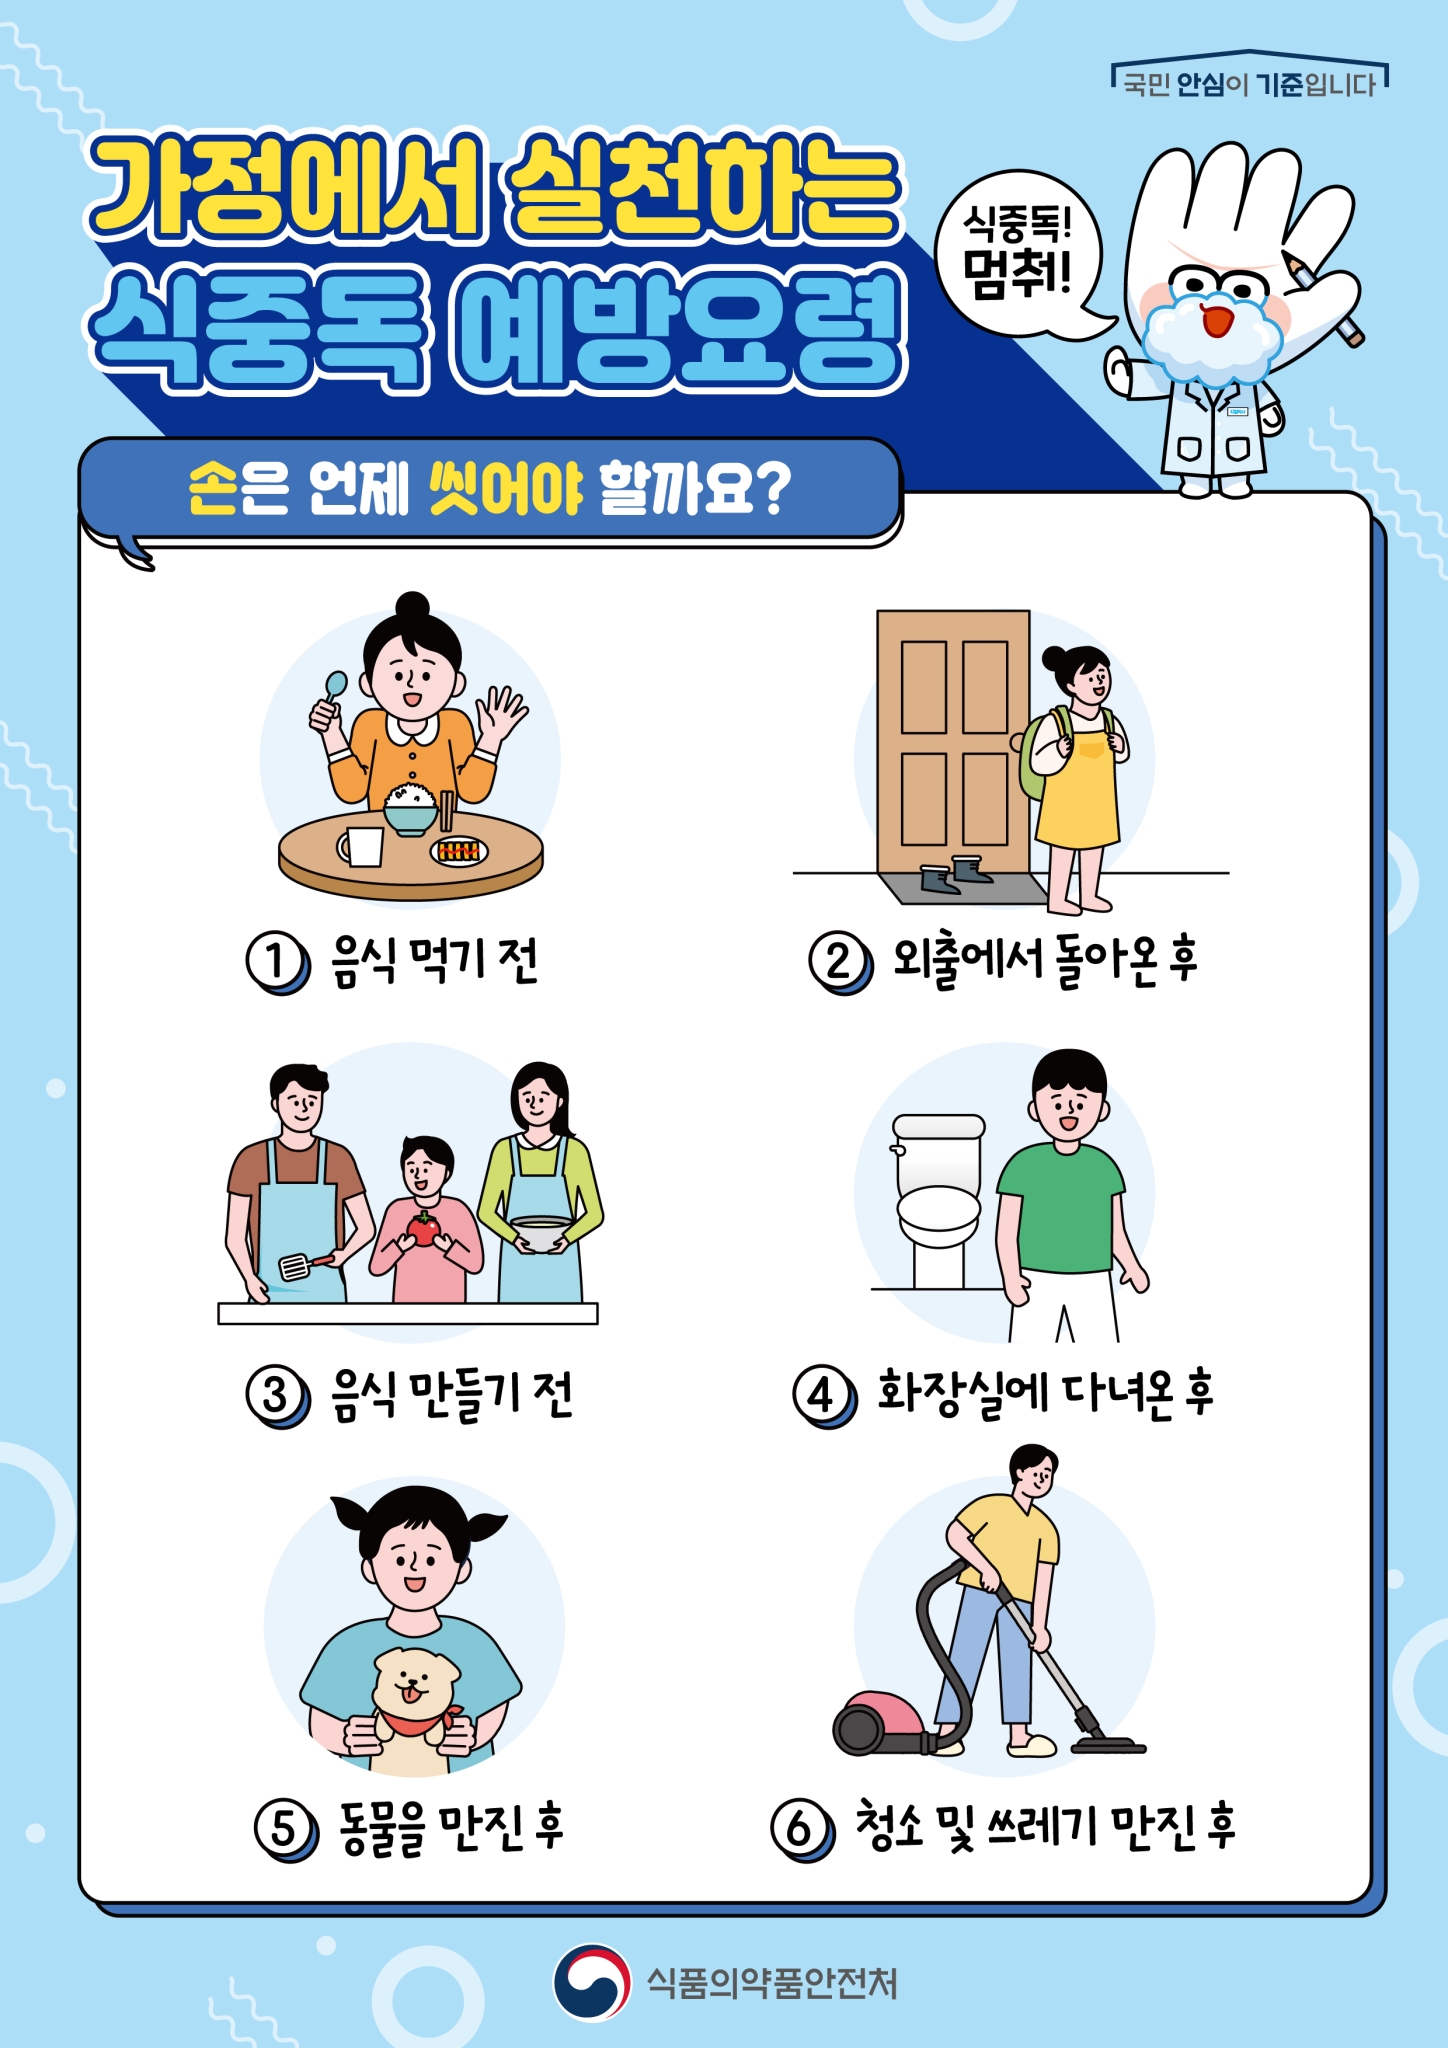 사본 -가정에서 실천하는 식중독 예방요령(가정통신문2)